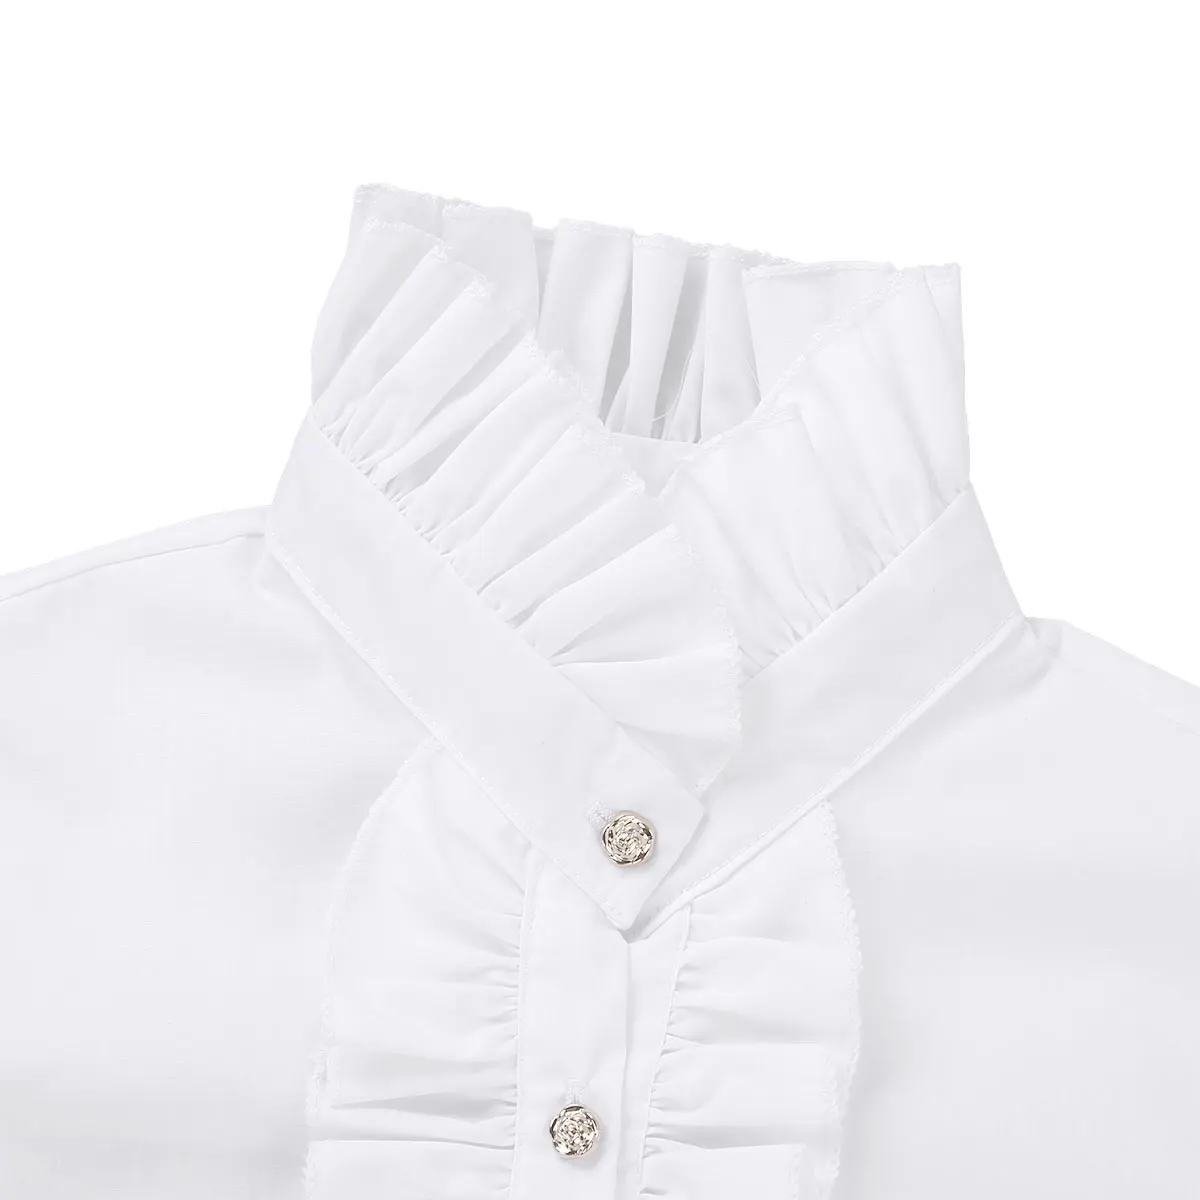 MSemis, Женская винтажная блузка с воротником-стойкой и съемными оборками, полублузка со стоячим воротником, одежда с золотыми пуговицами на шее